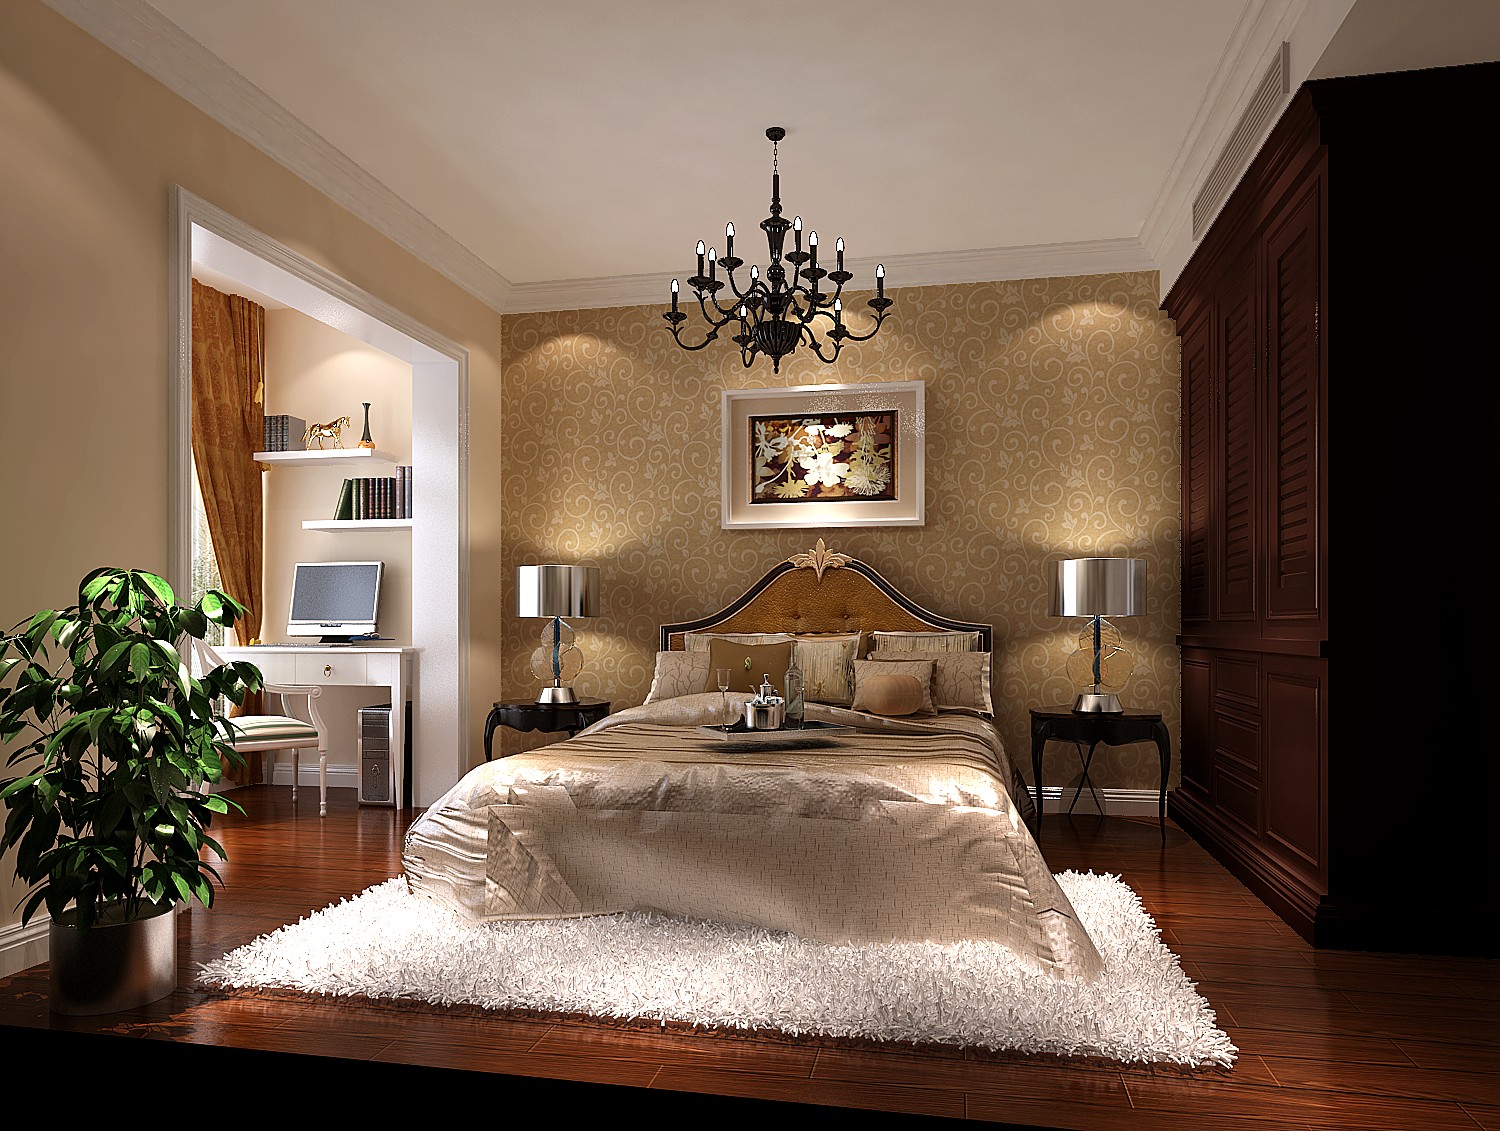 简约 现代 时尚 白富美 高度国际 二居 白领 80后 水色时光 卧室图片来自北京高度国际装饰设计在水色时光98平简欧公寓的分享